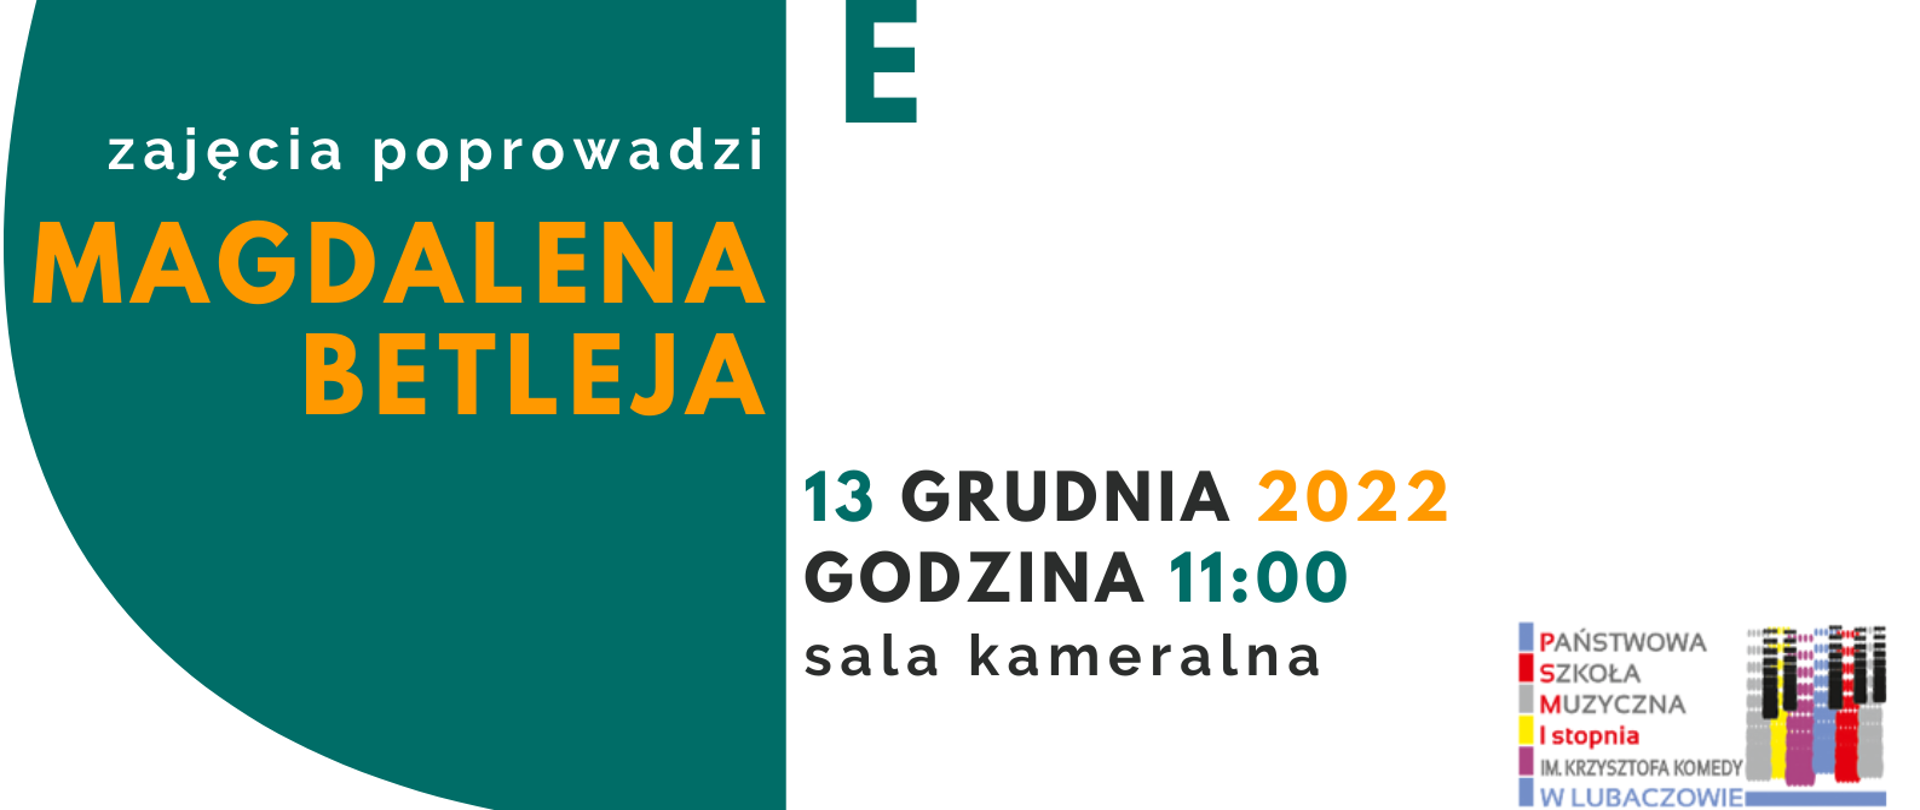 Biało-zielony plakat na tle ikony skrzypiec, z logo szkoły w prawym dolnym rogu i tekstem "Warsztaty skrzypcowe 13 grudnia 2022 godz. 11.00 sala kameralna